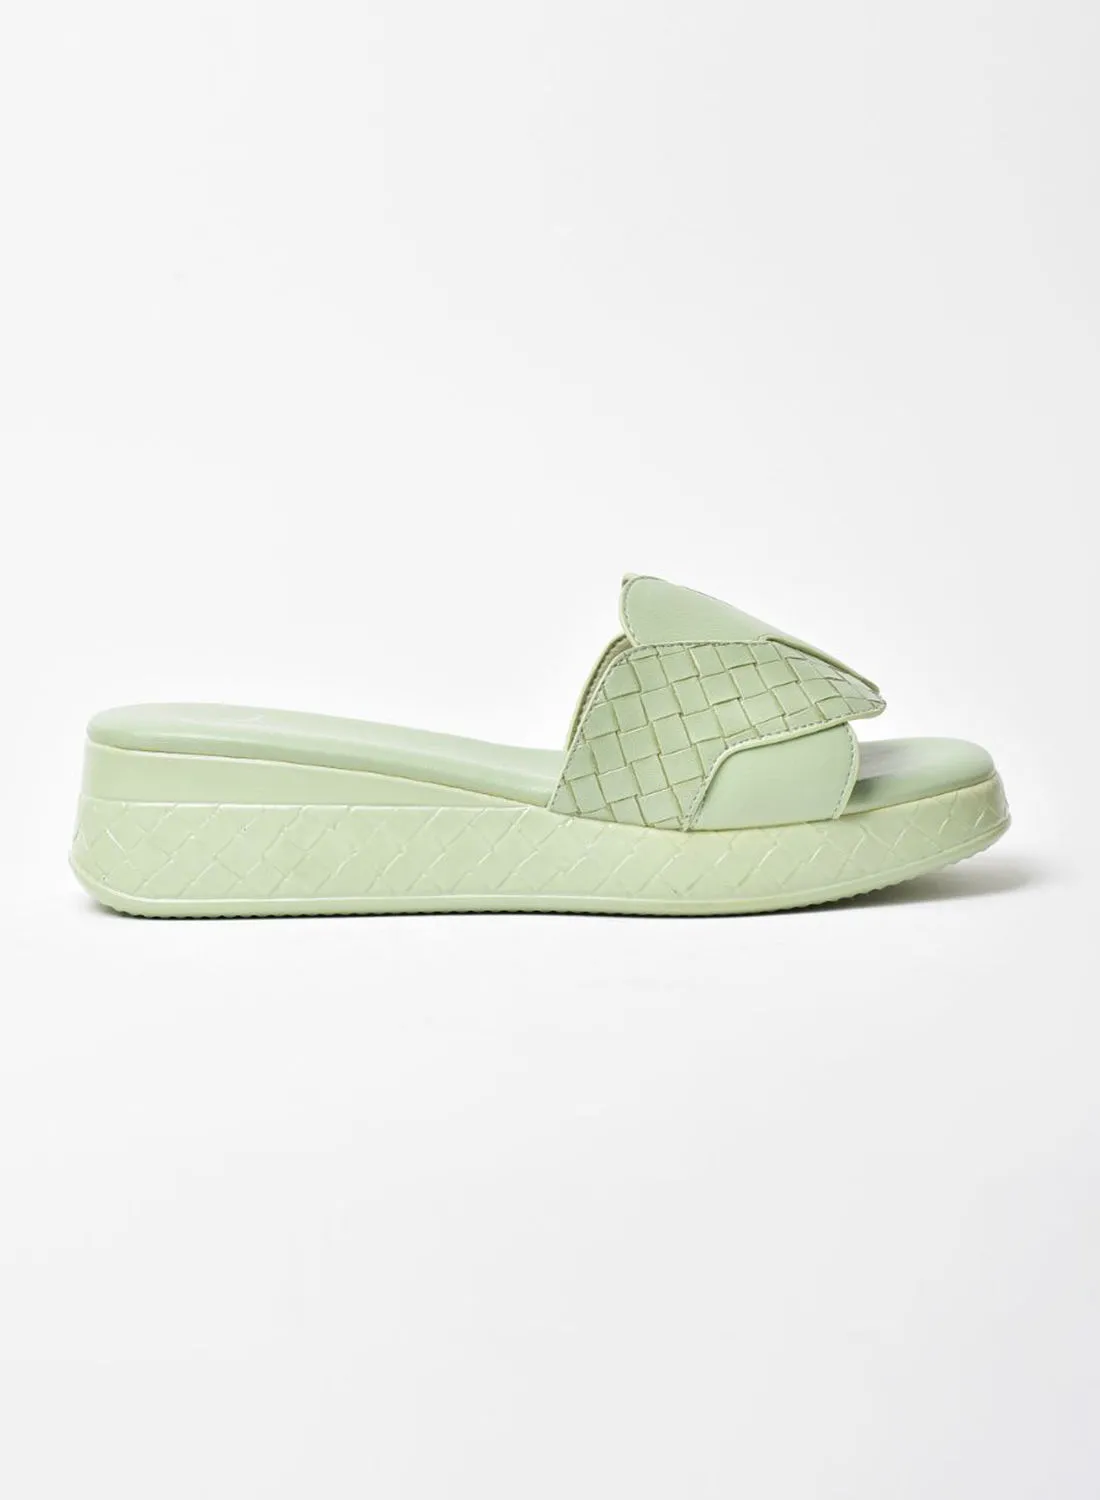 Jove Comfortable Casual Sandals Green